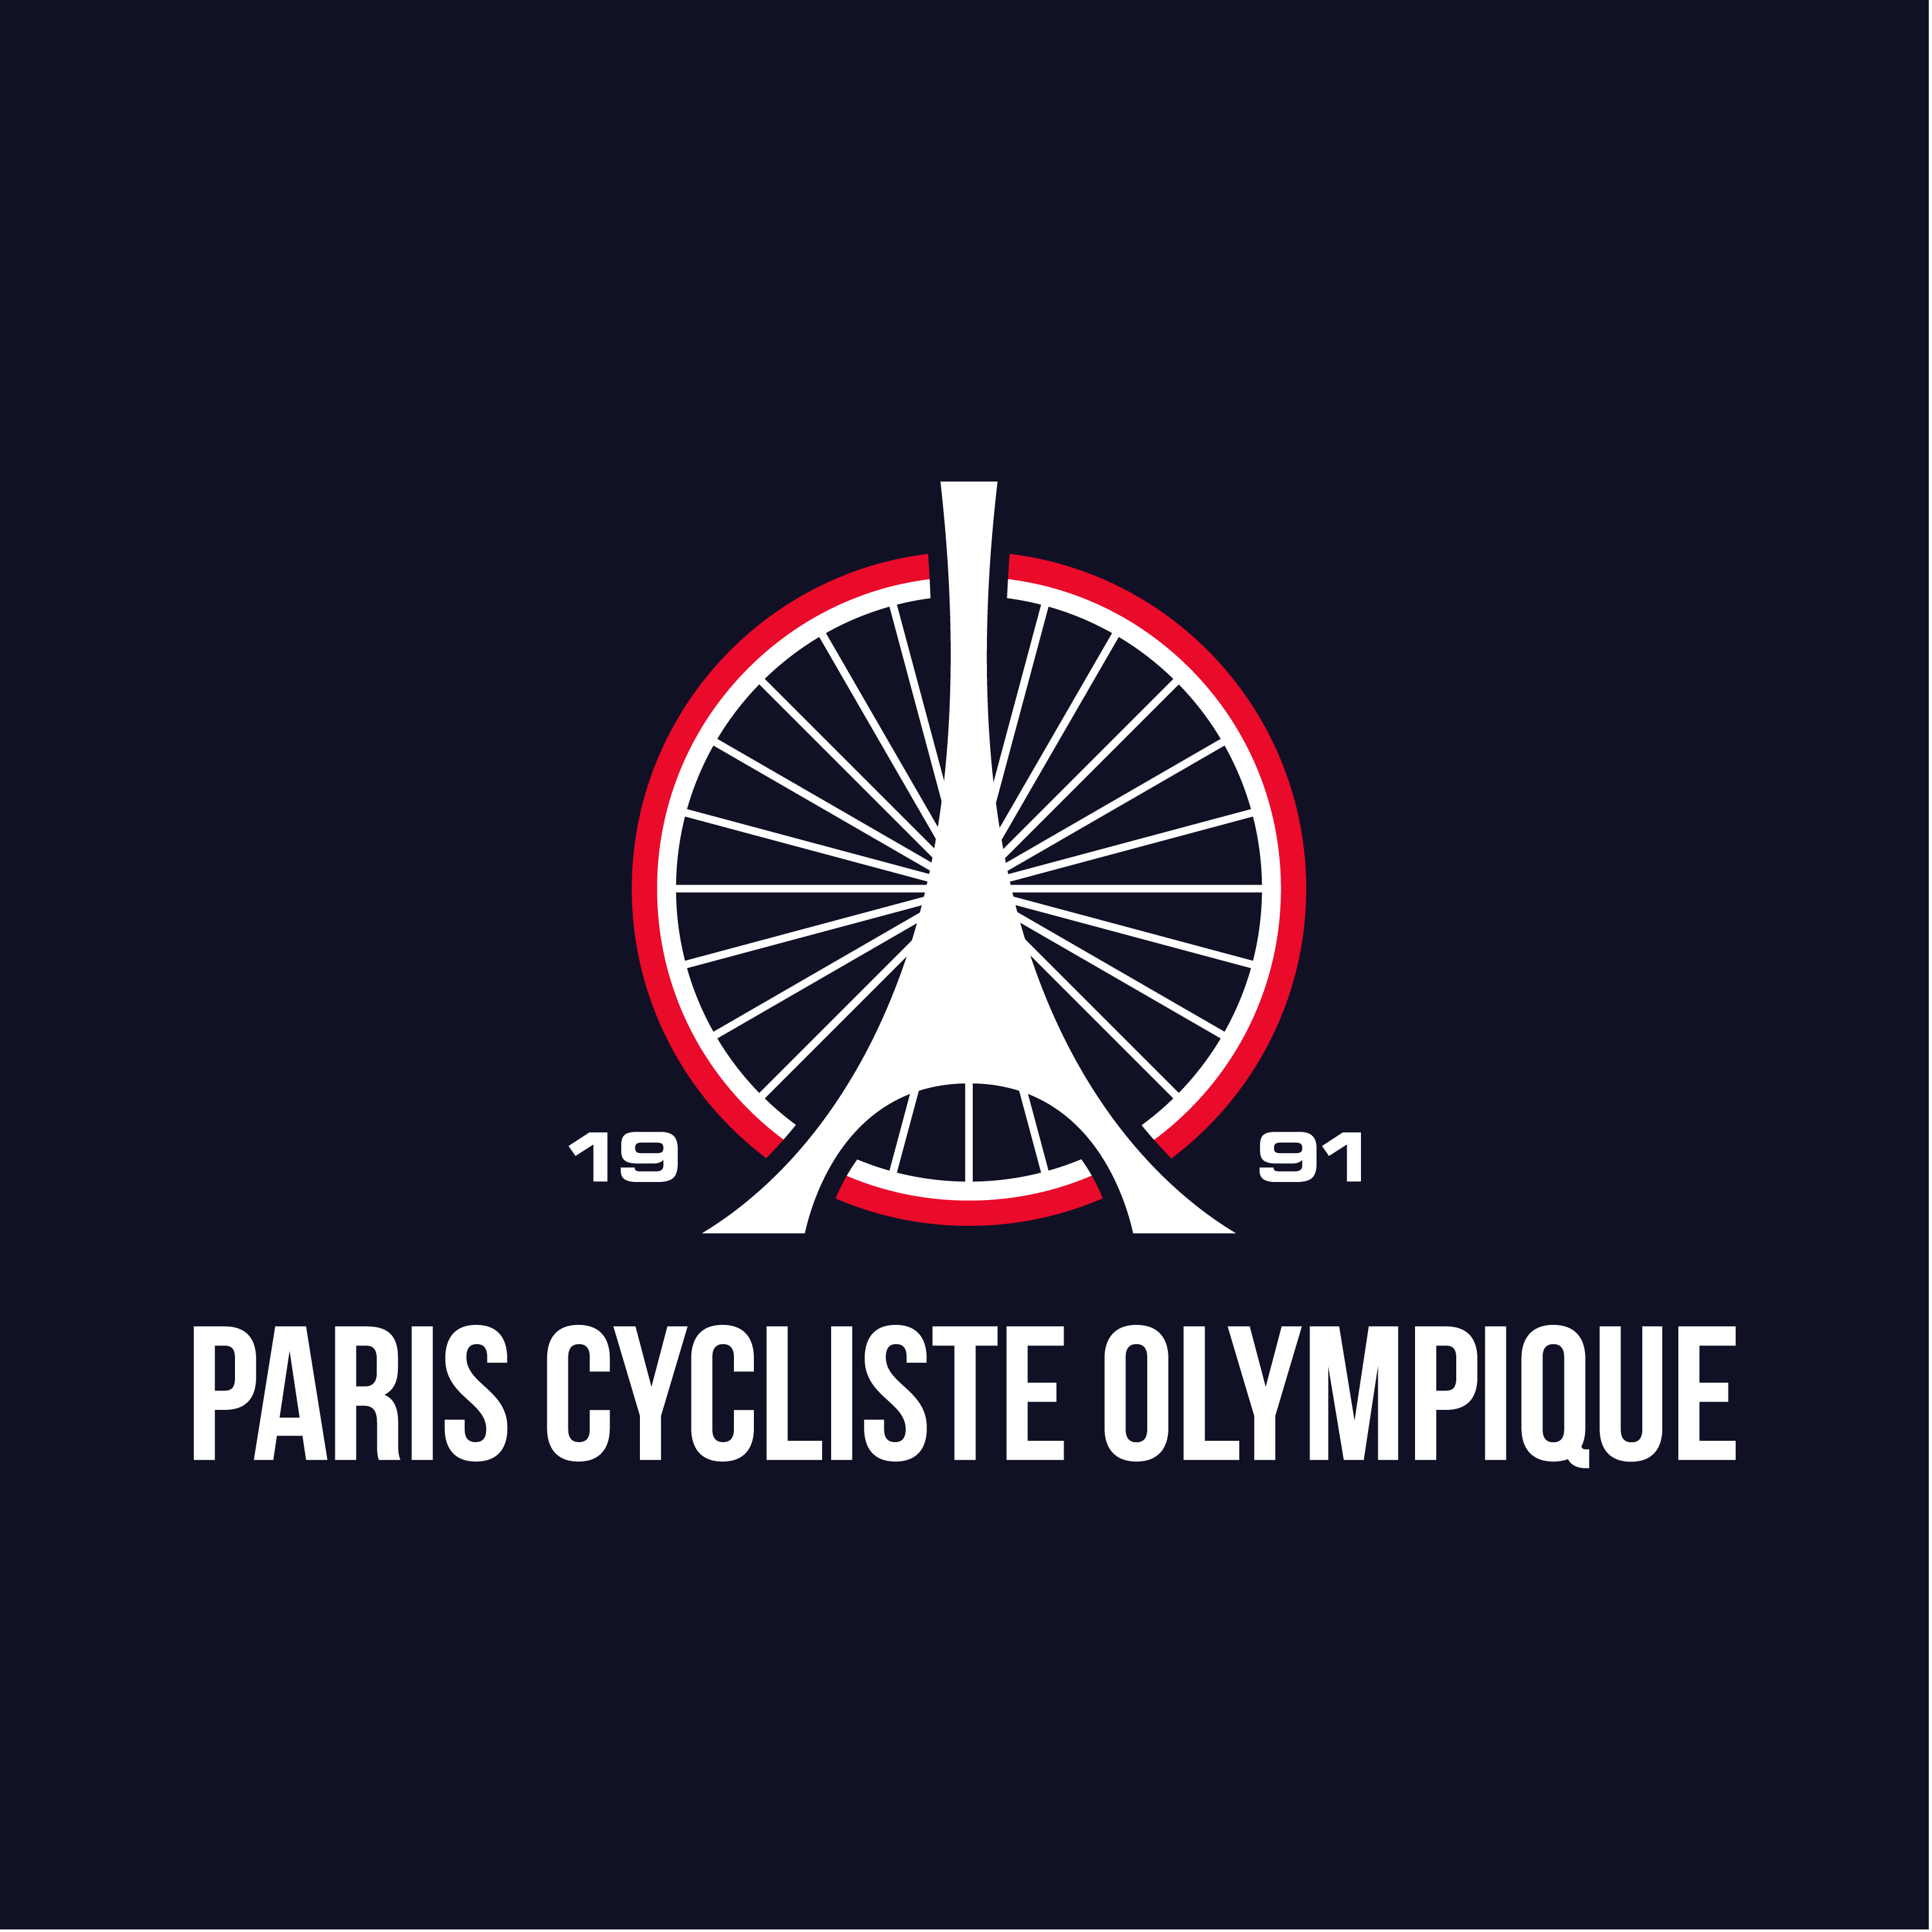 Club Image for PARIS CYCLISTE OLYMPIQUE